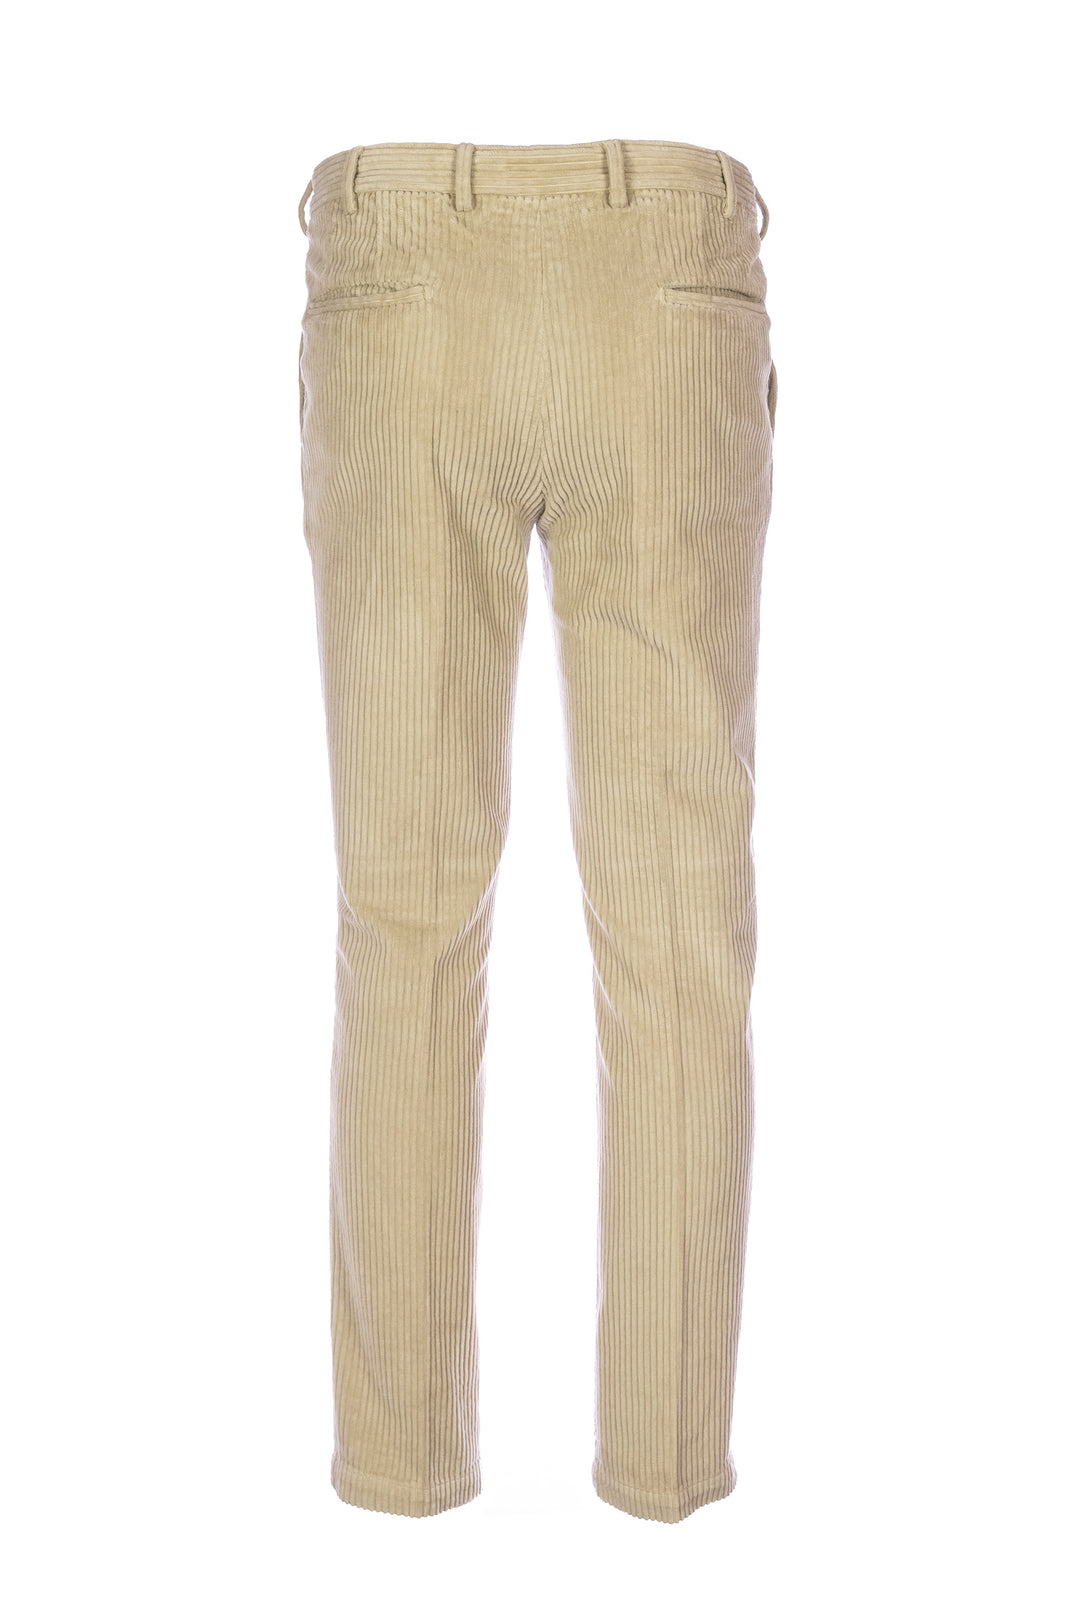 DEVORE Pantalone cammello in velluto rocciatore con vita elastica - Mancinelli 1954